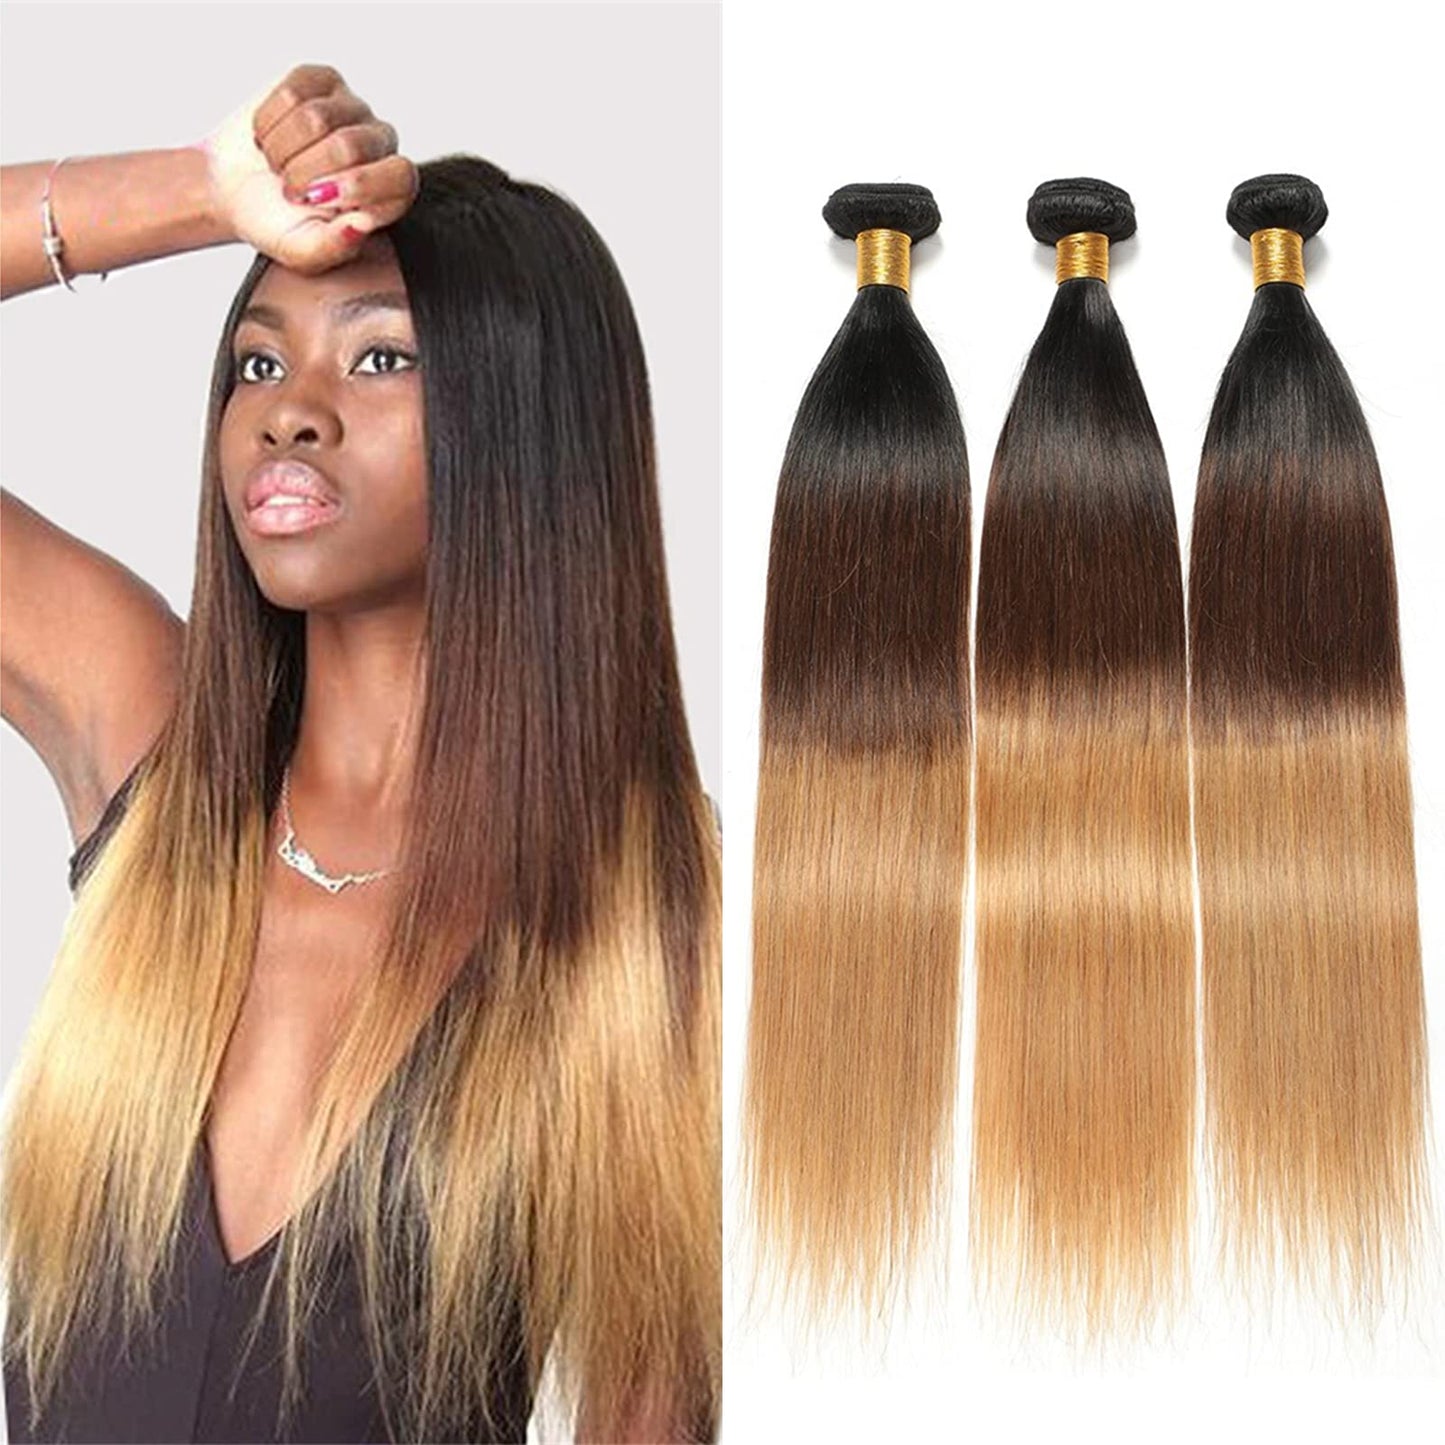 Brazilian Virgin Human Hair 12A Weft Weave Bundles 300g Straight